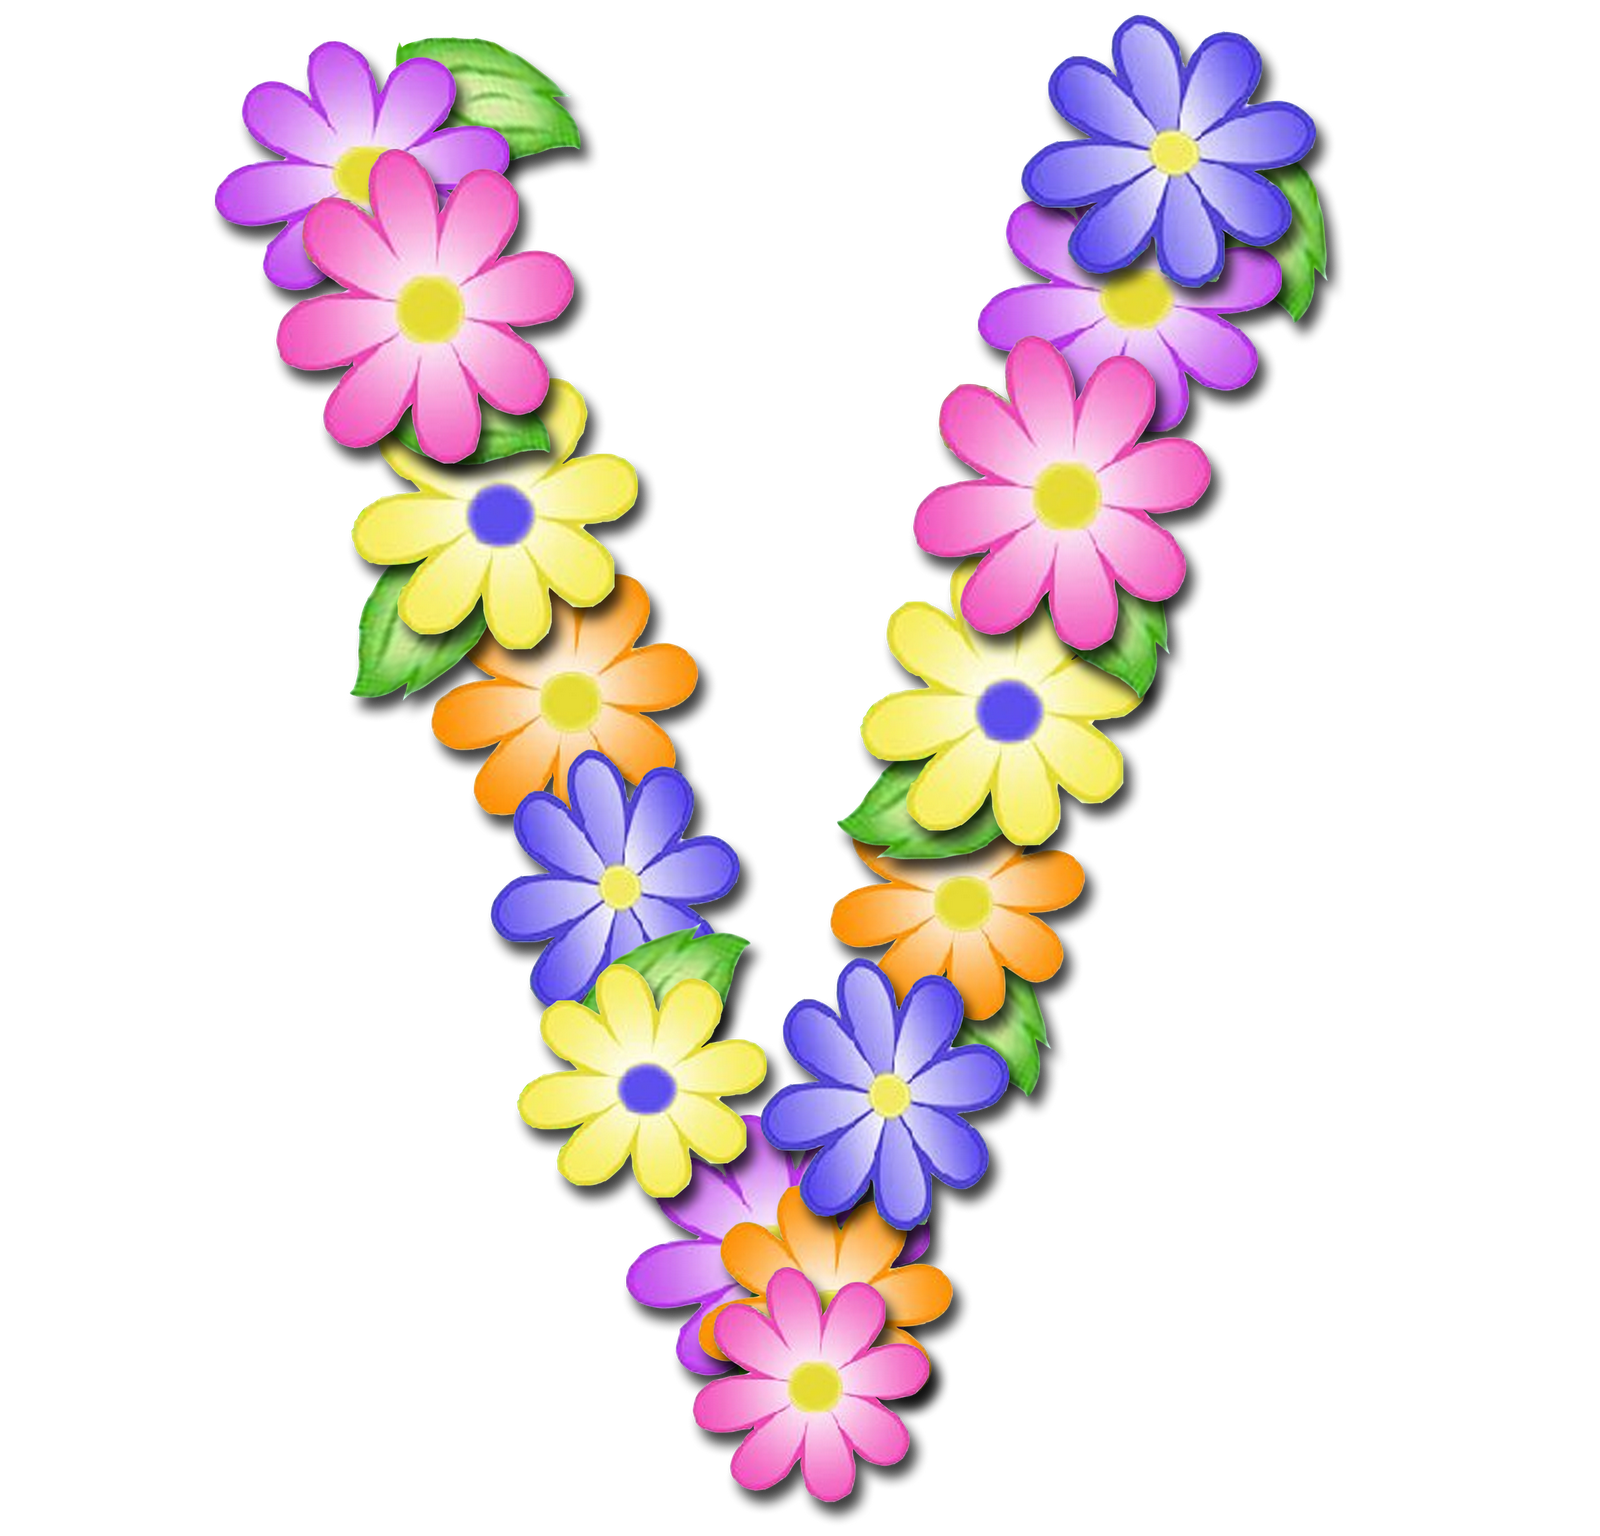 صور الحروف الإنجليزية بأجمل الزهور والورود بخلفية شفافة بنج png وجودة عالية للمصممين :: إبحث عن حروف إسمك بالإنجليزية - صفحة 3 P_1699b7xmx1